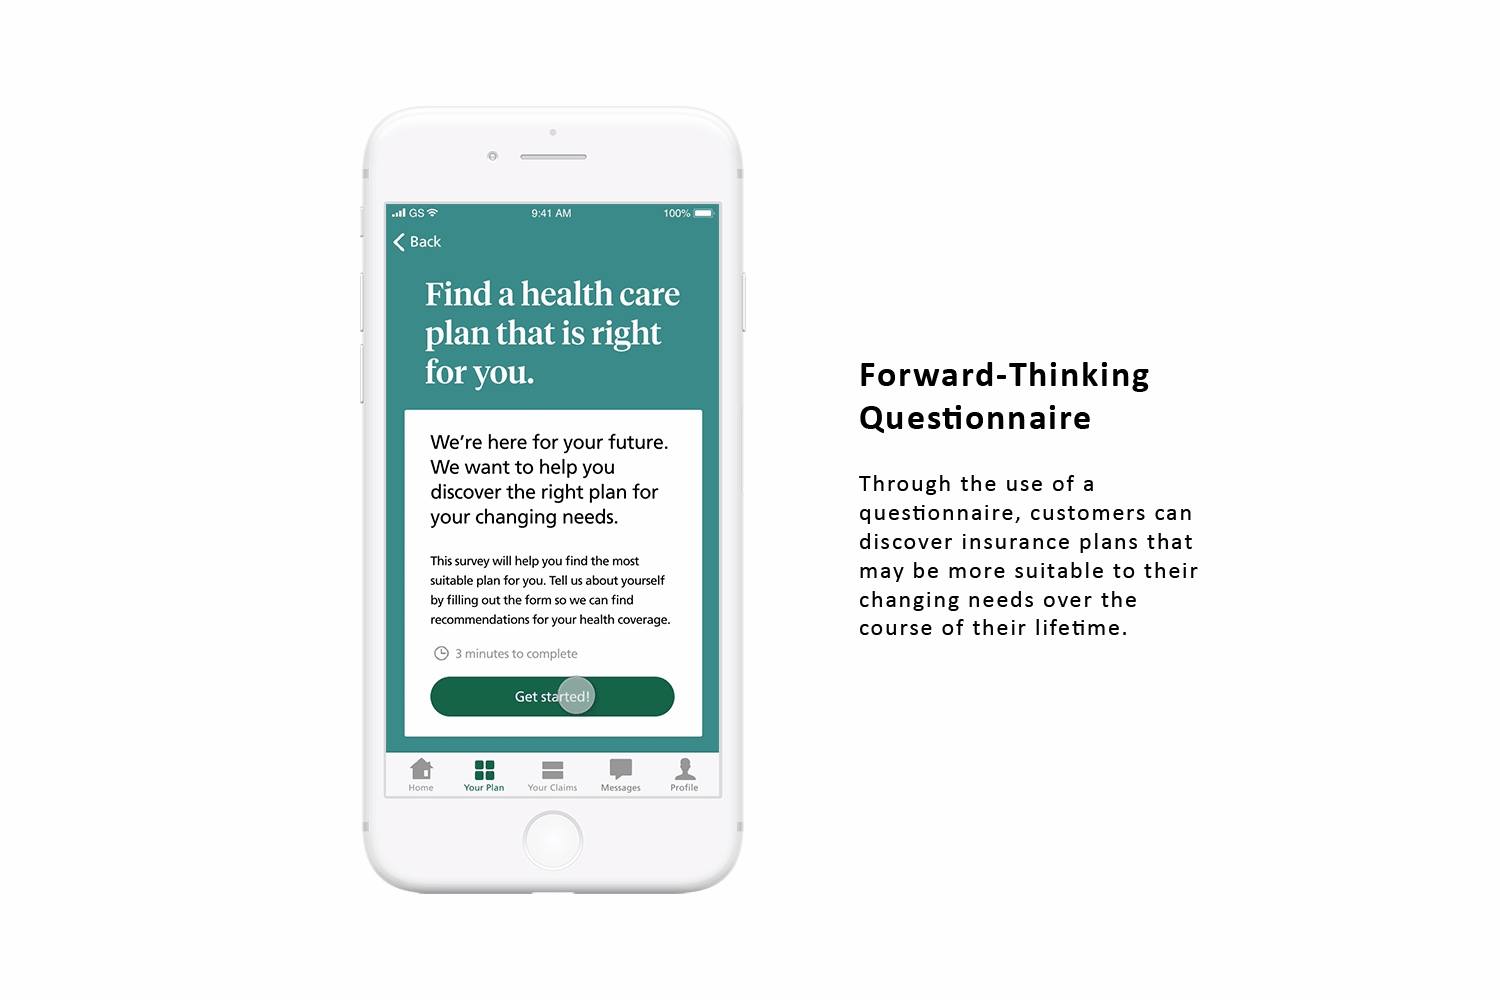 Forward-Thinking Questionnaire